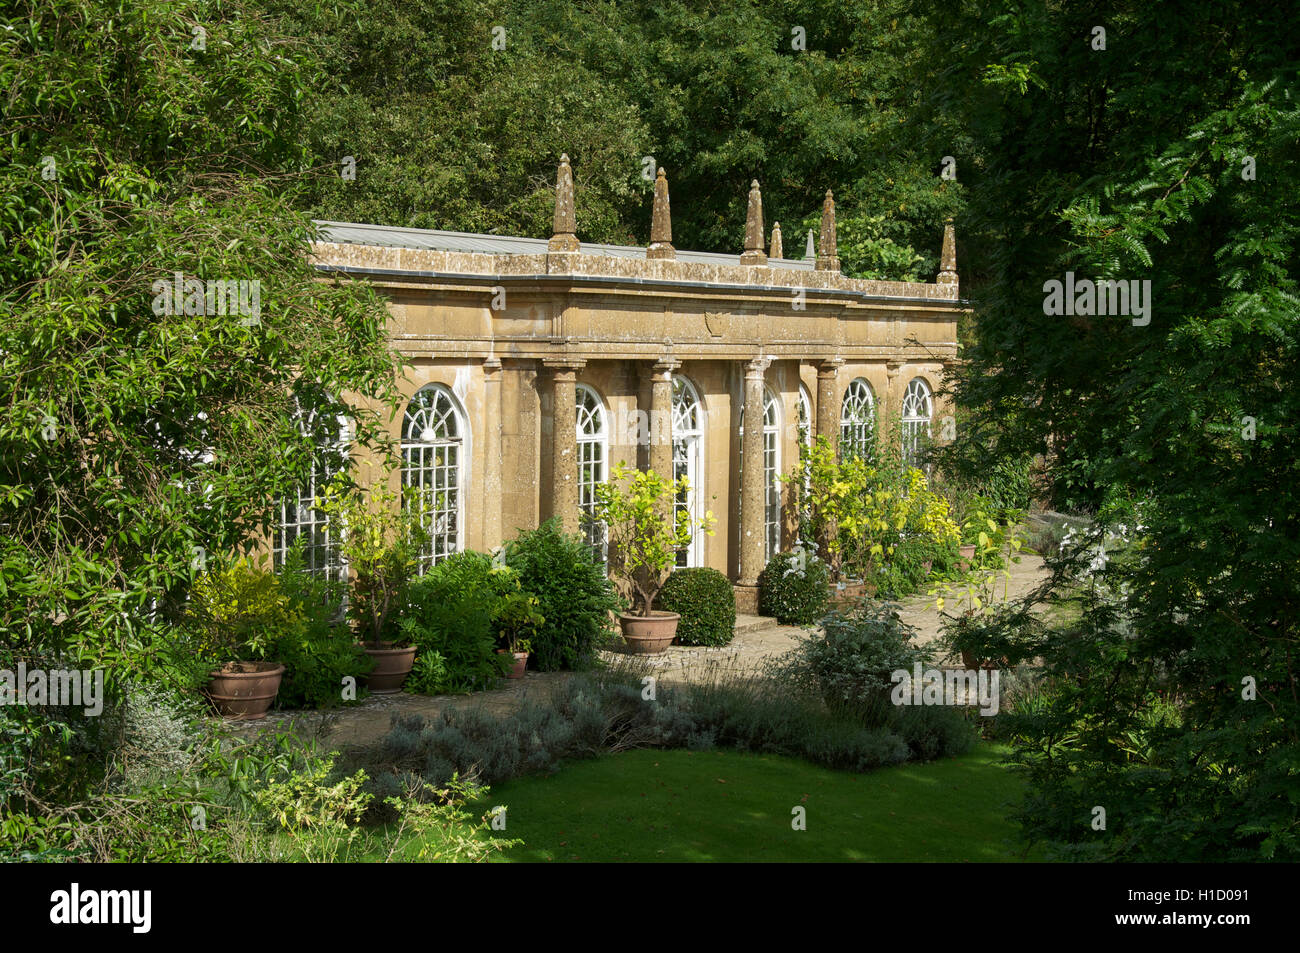 Architektur. Eine Orangerie in den italienischen Gärten von Mapperton. Eine malerische historische Herrenhaus in der Nähe von Beaminster in ländlichen West Dorset, England. Stockfoto